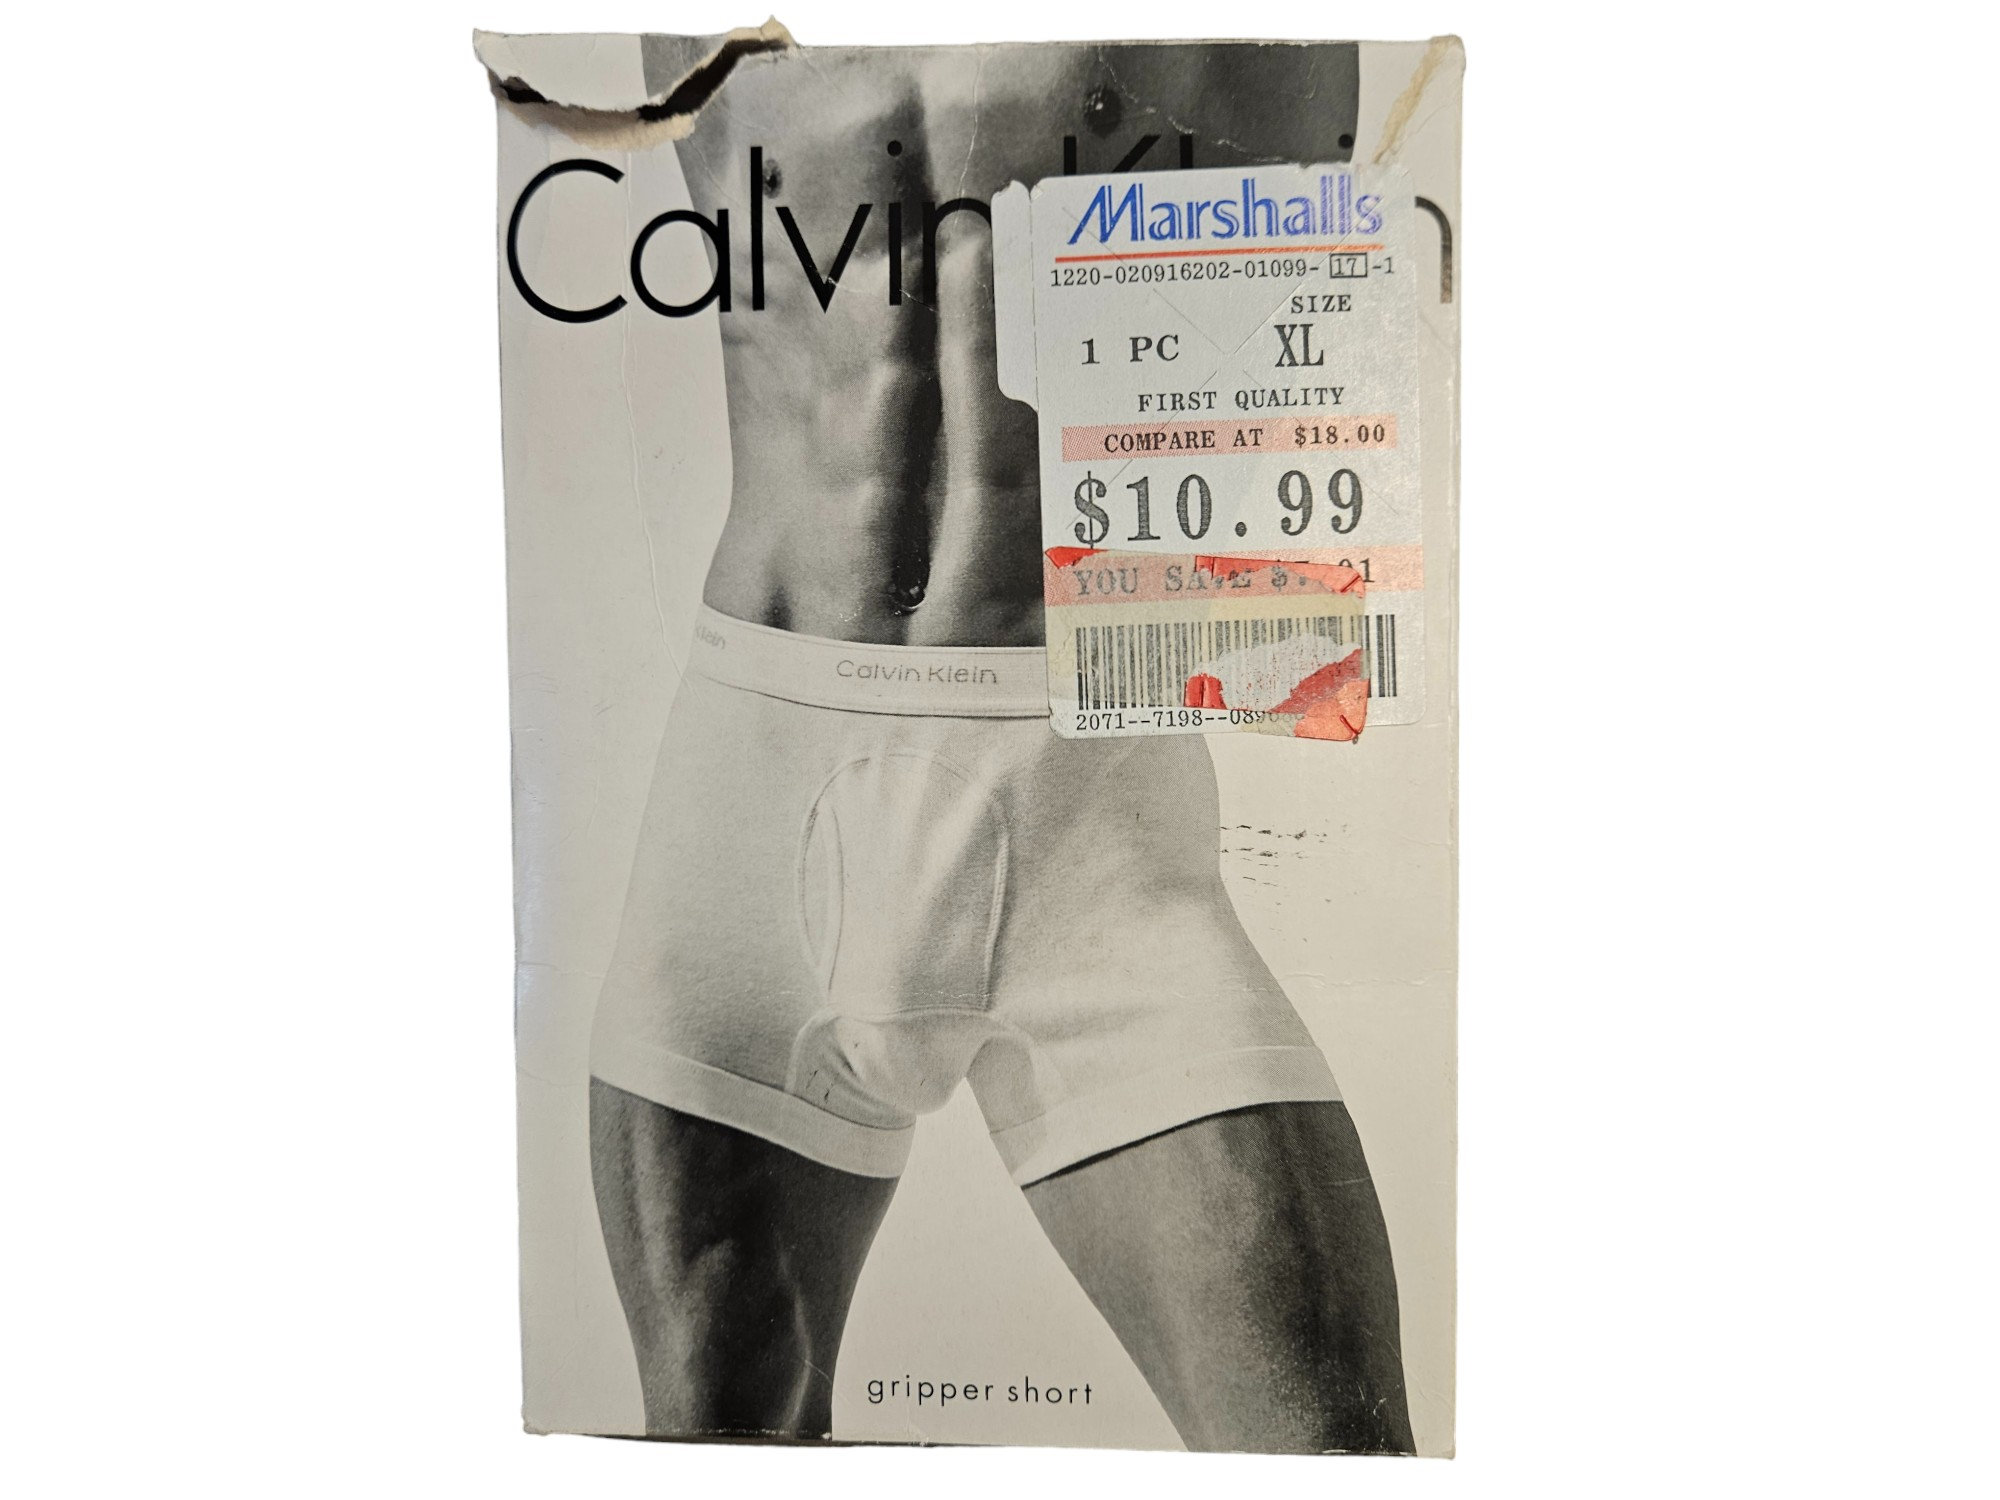 Vintage calvin klein underwear 